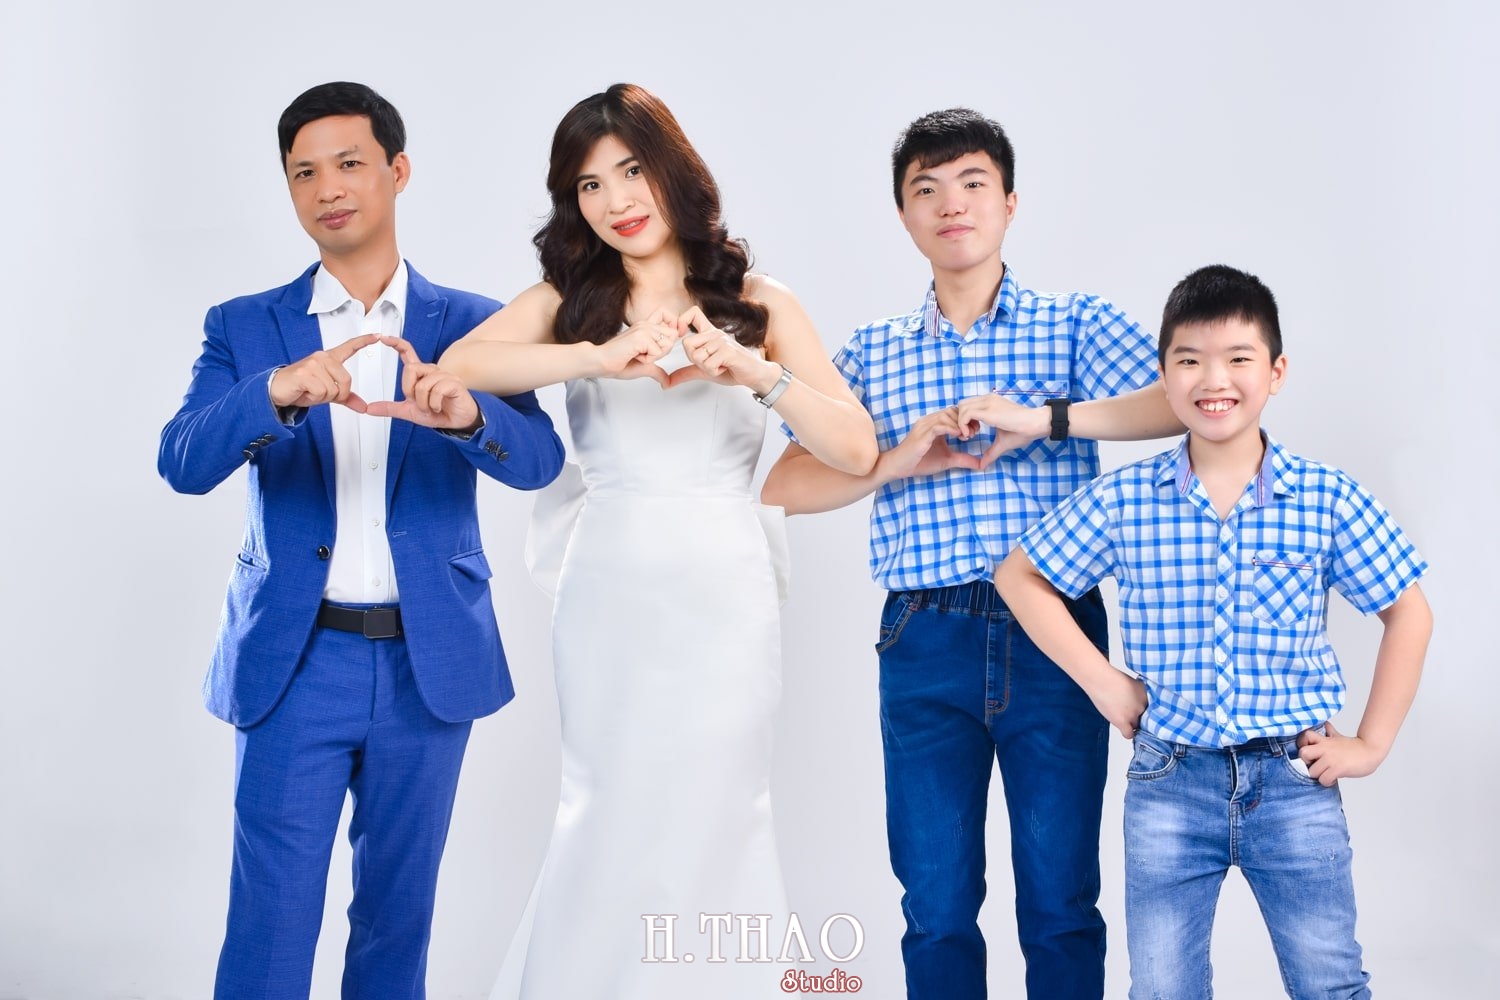 Anh gia dinh 4 nguoi 9 min - Chụp ảnh kỷ niệm 15 năm ngày cưới gia đình chị Tho- HThao Studio